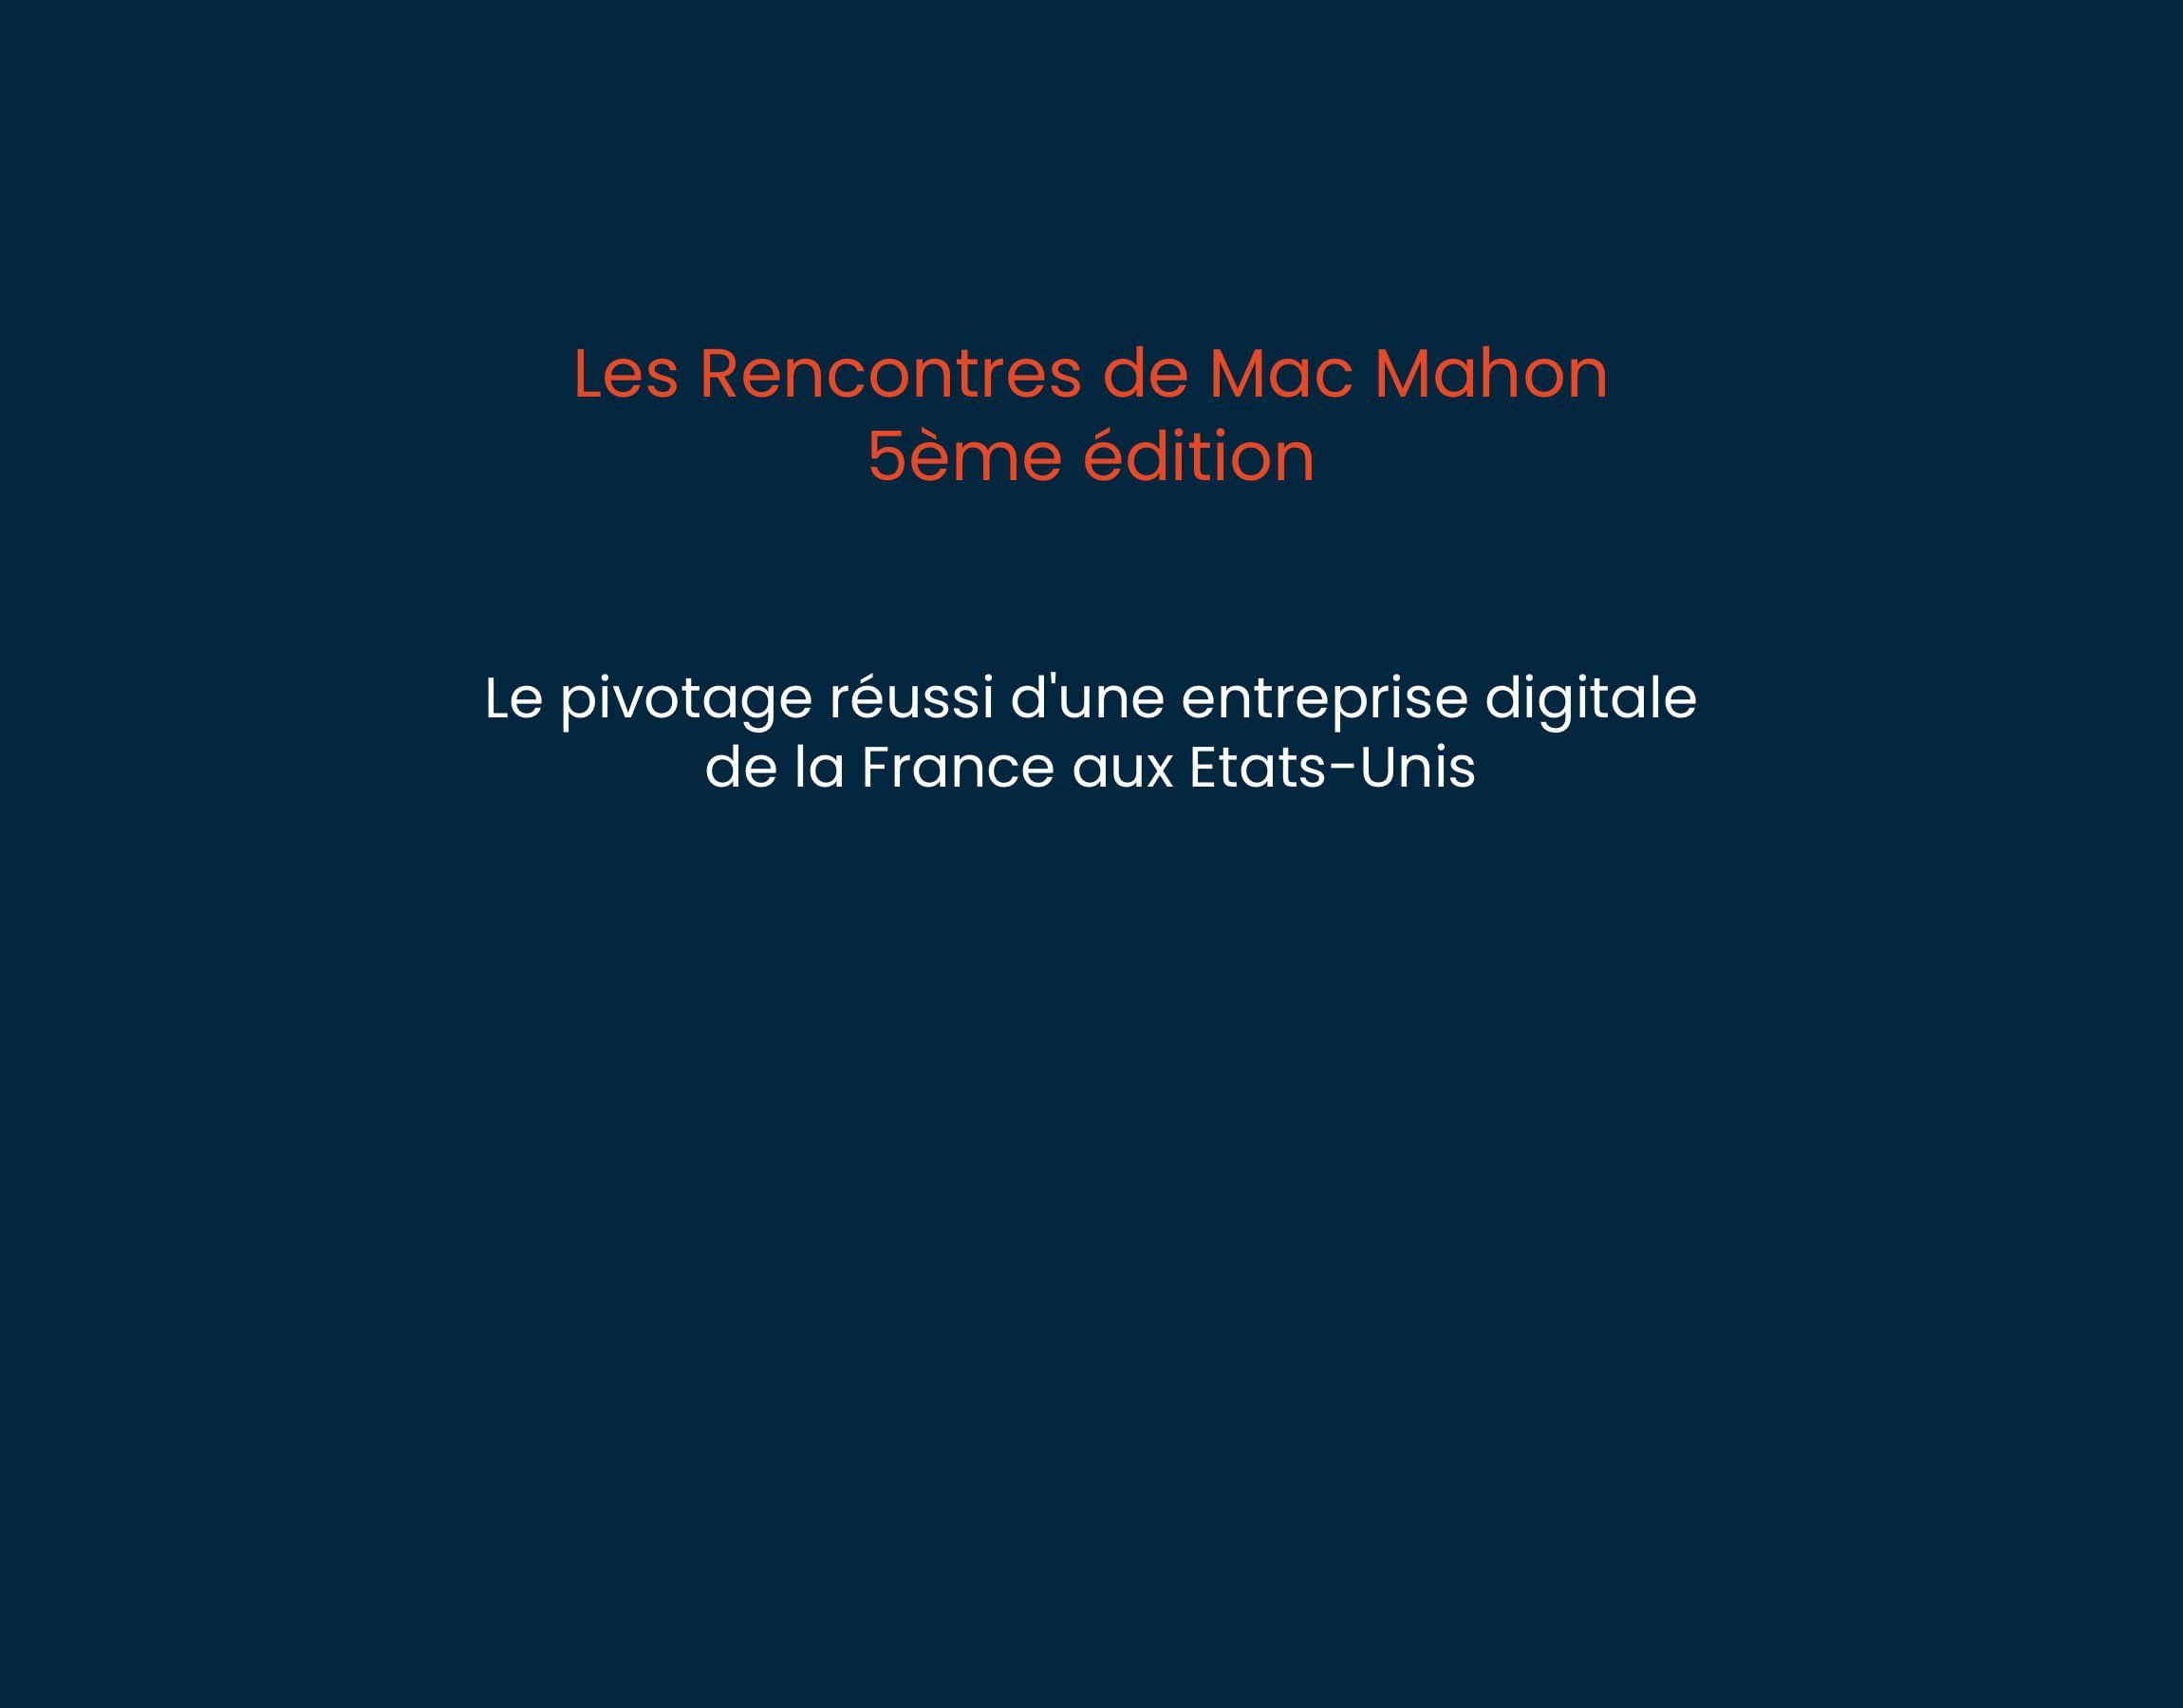 5ème édition “Les Rencontres de Mac Mahon”